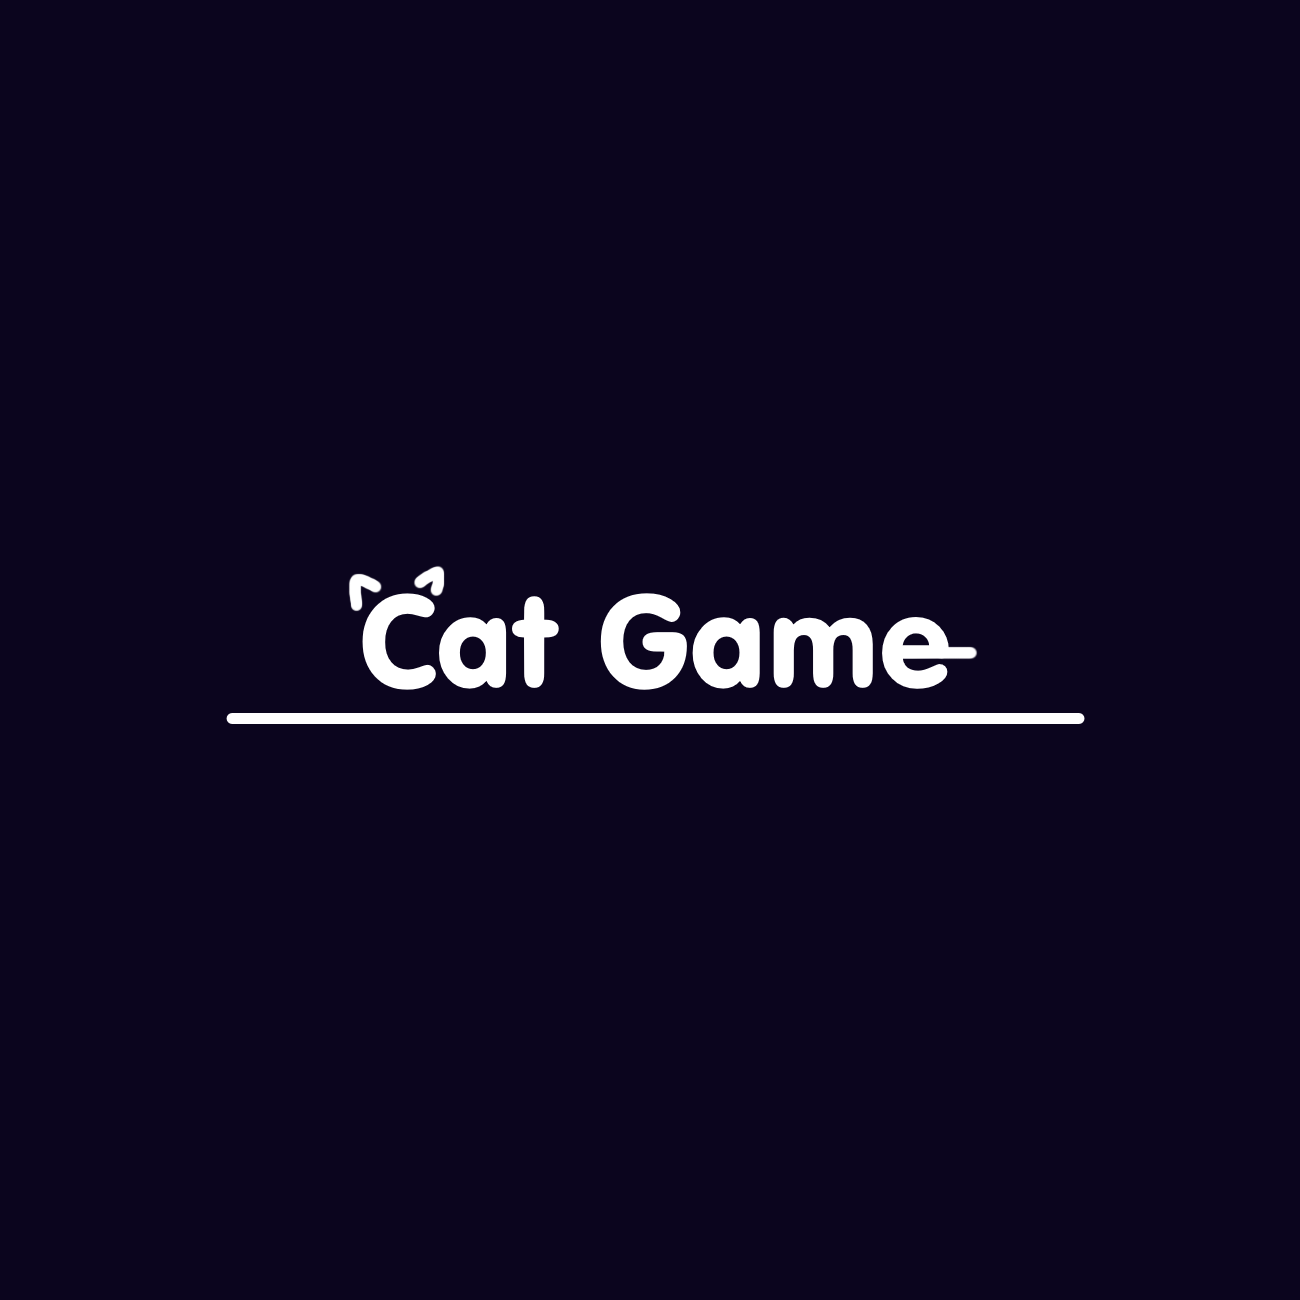 Cat Game